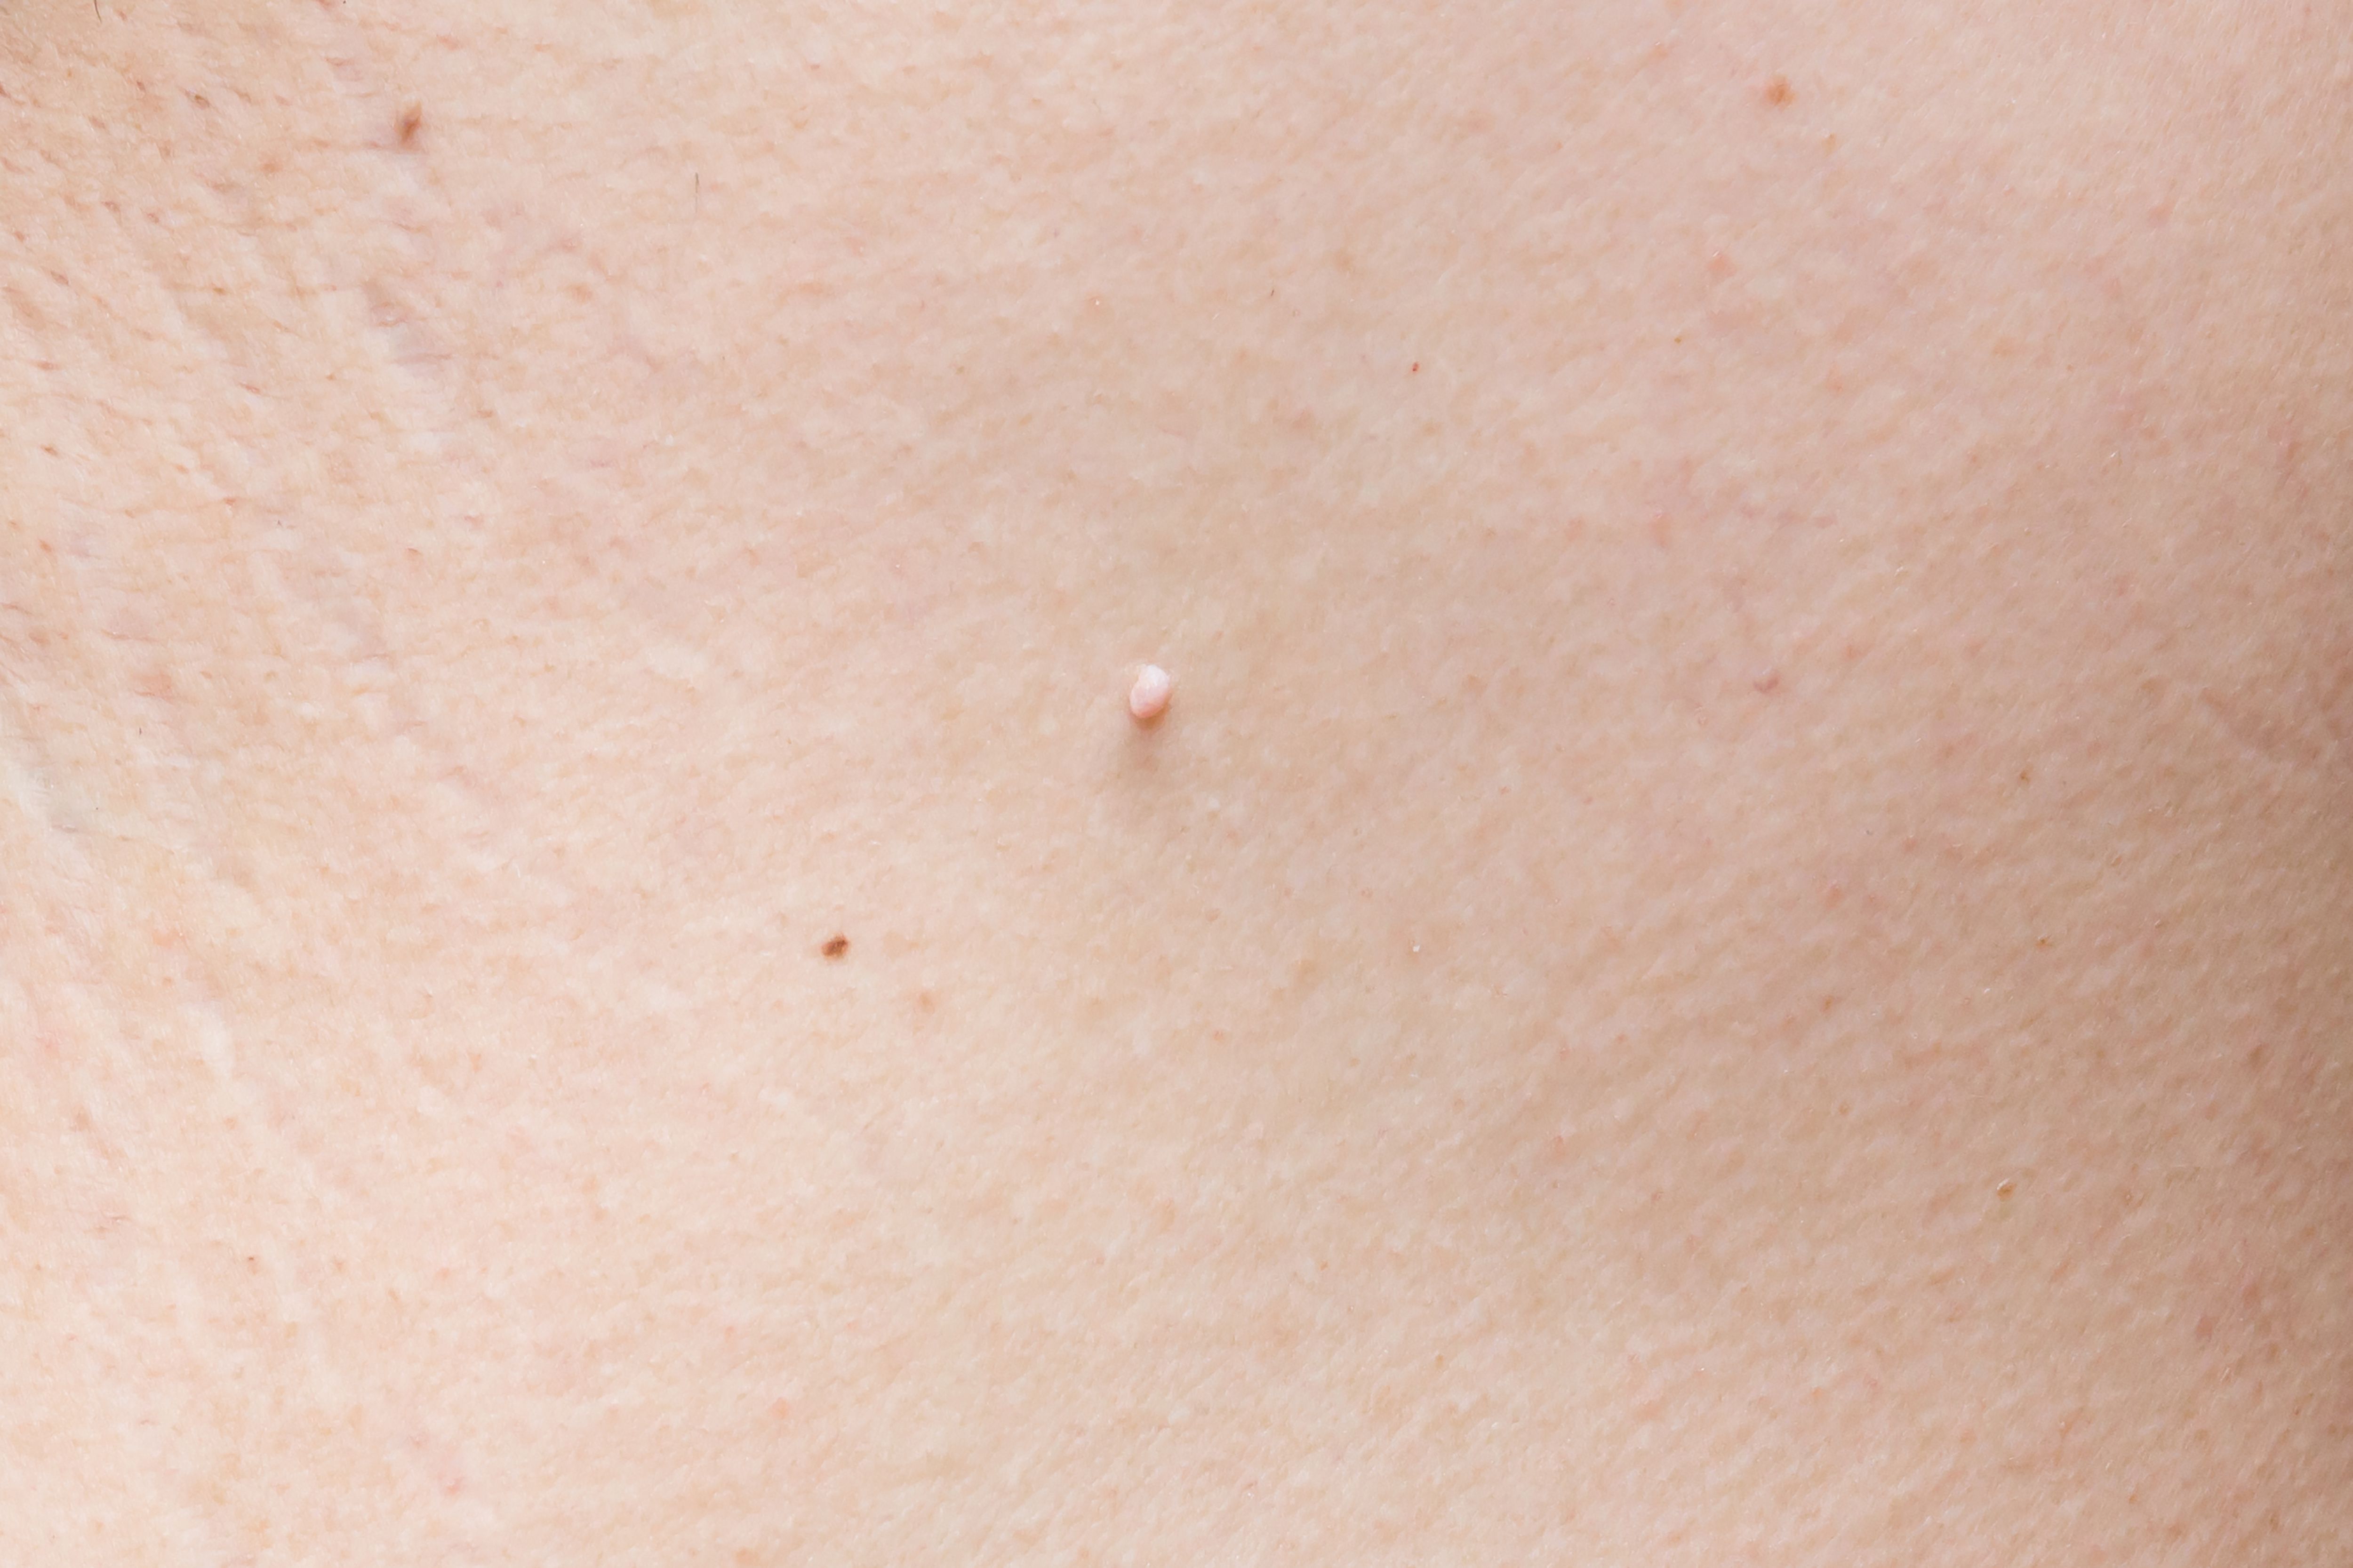 папилломы на груди у женщин фото 99